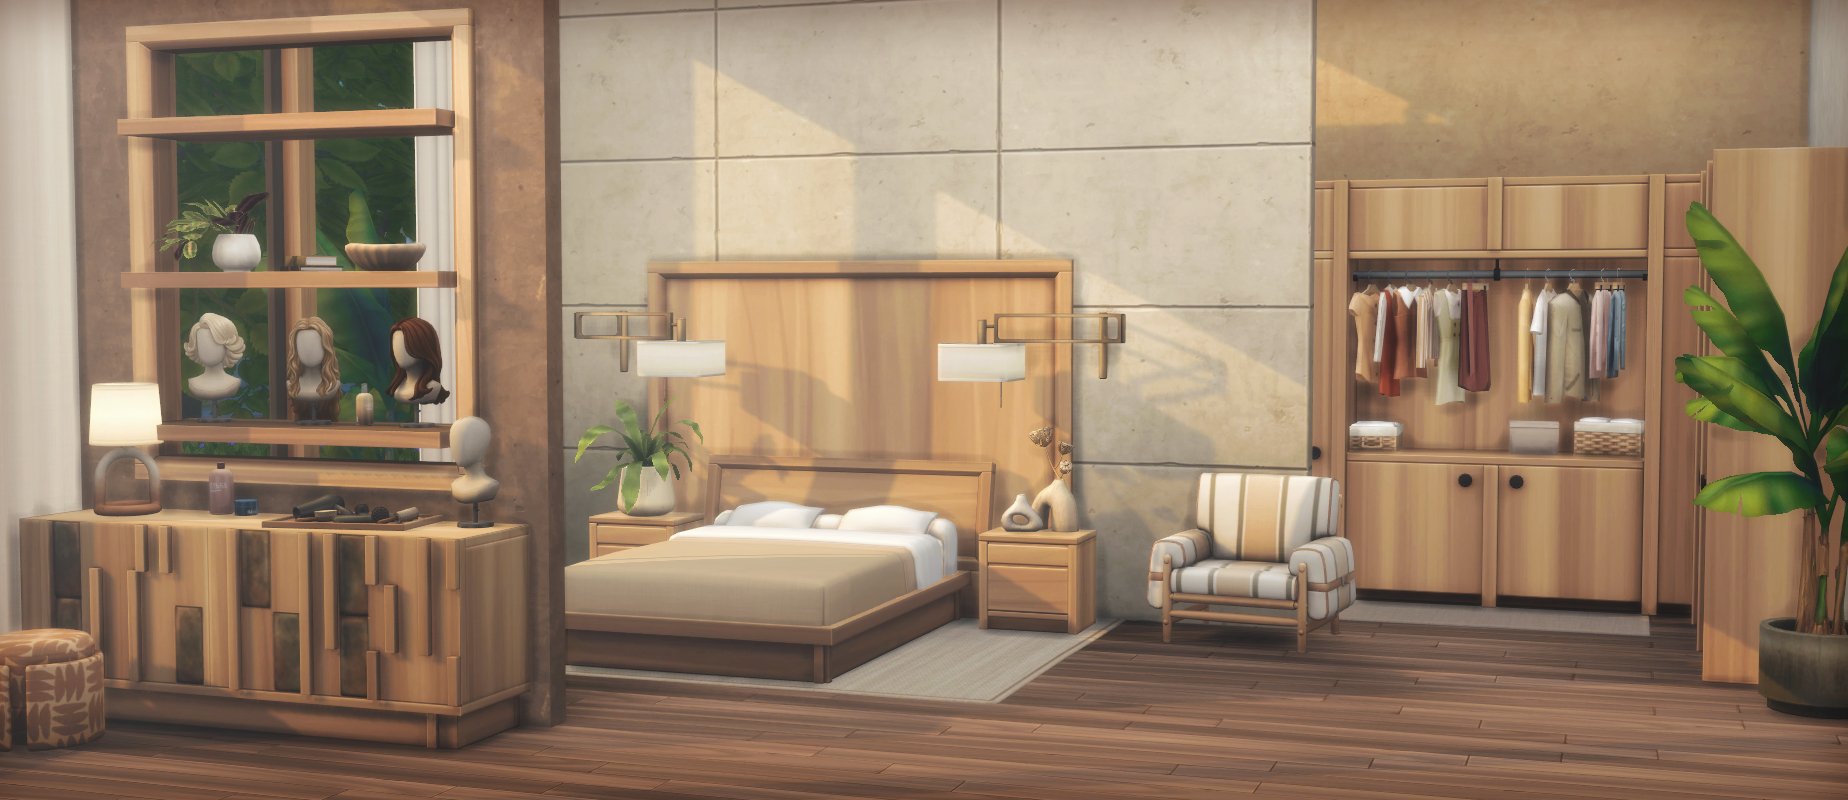 Sims 4 Mcm Furniture